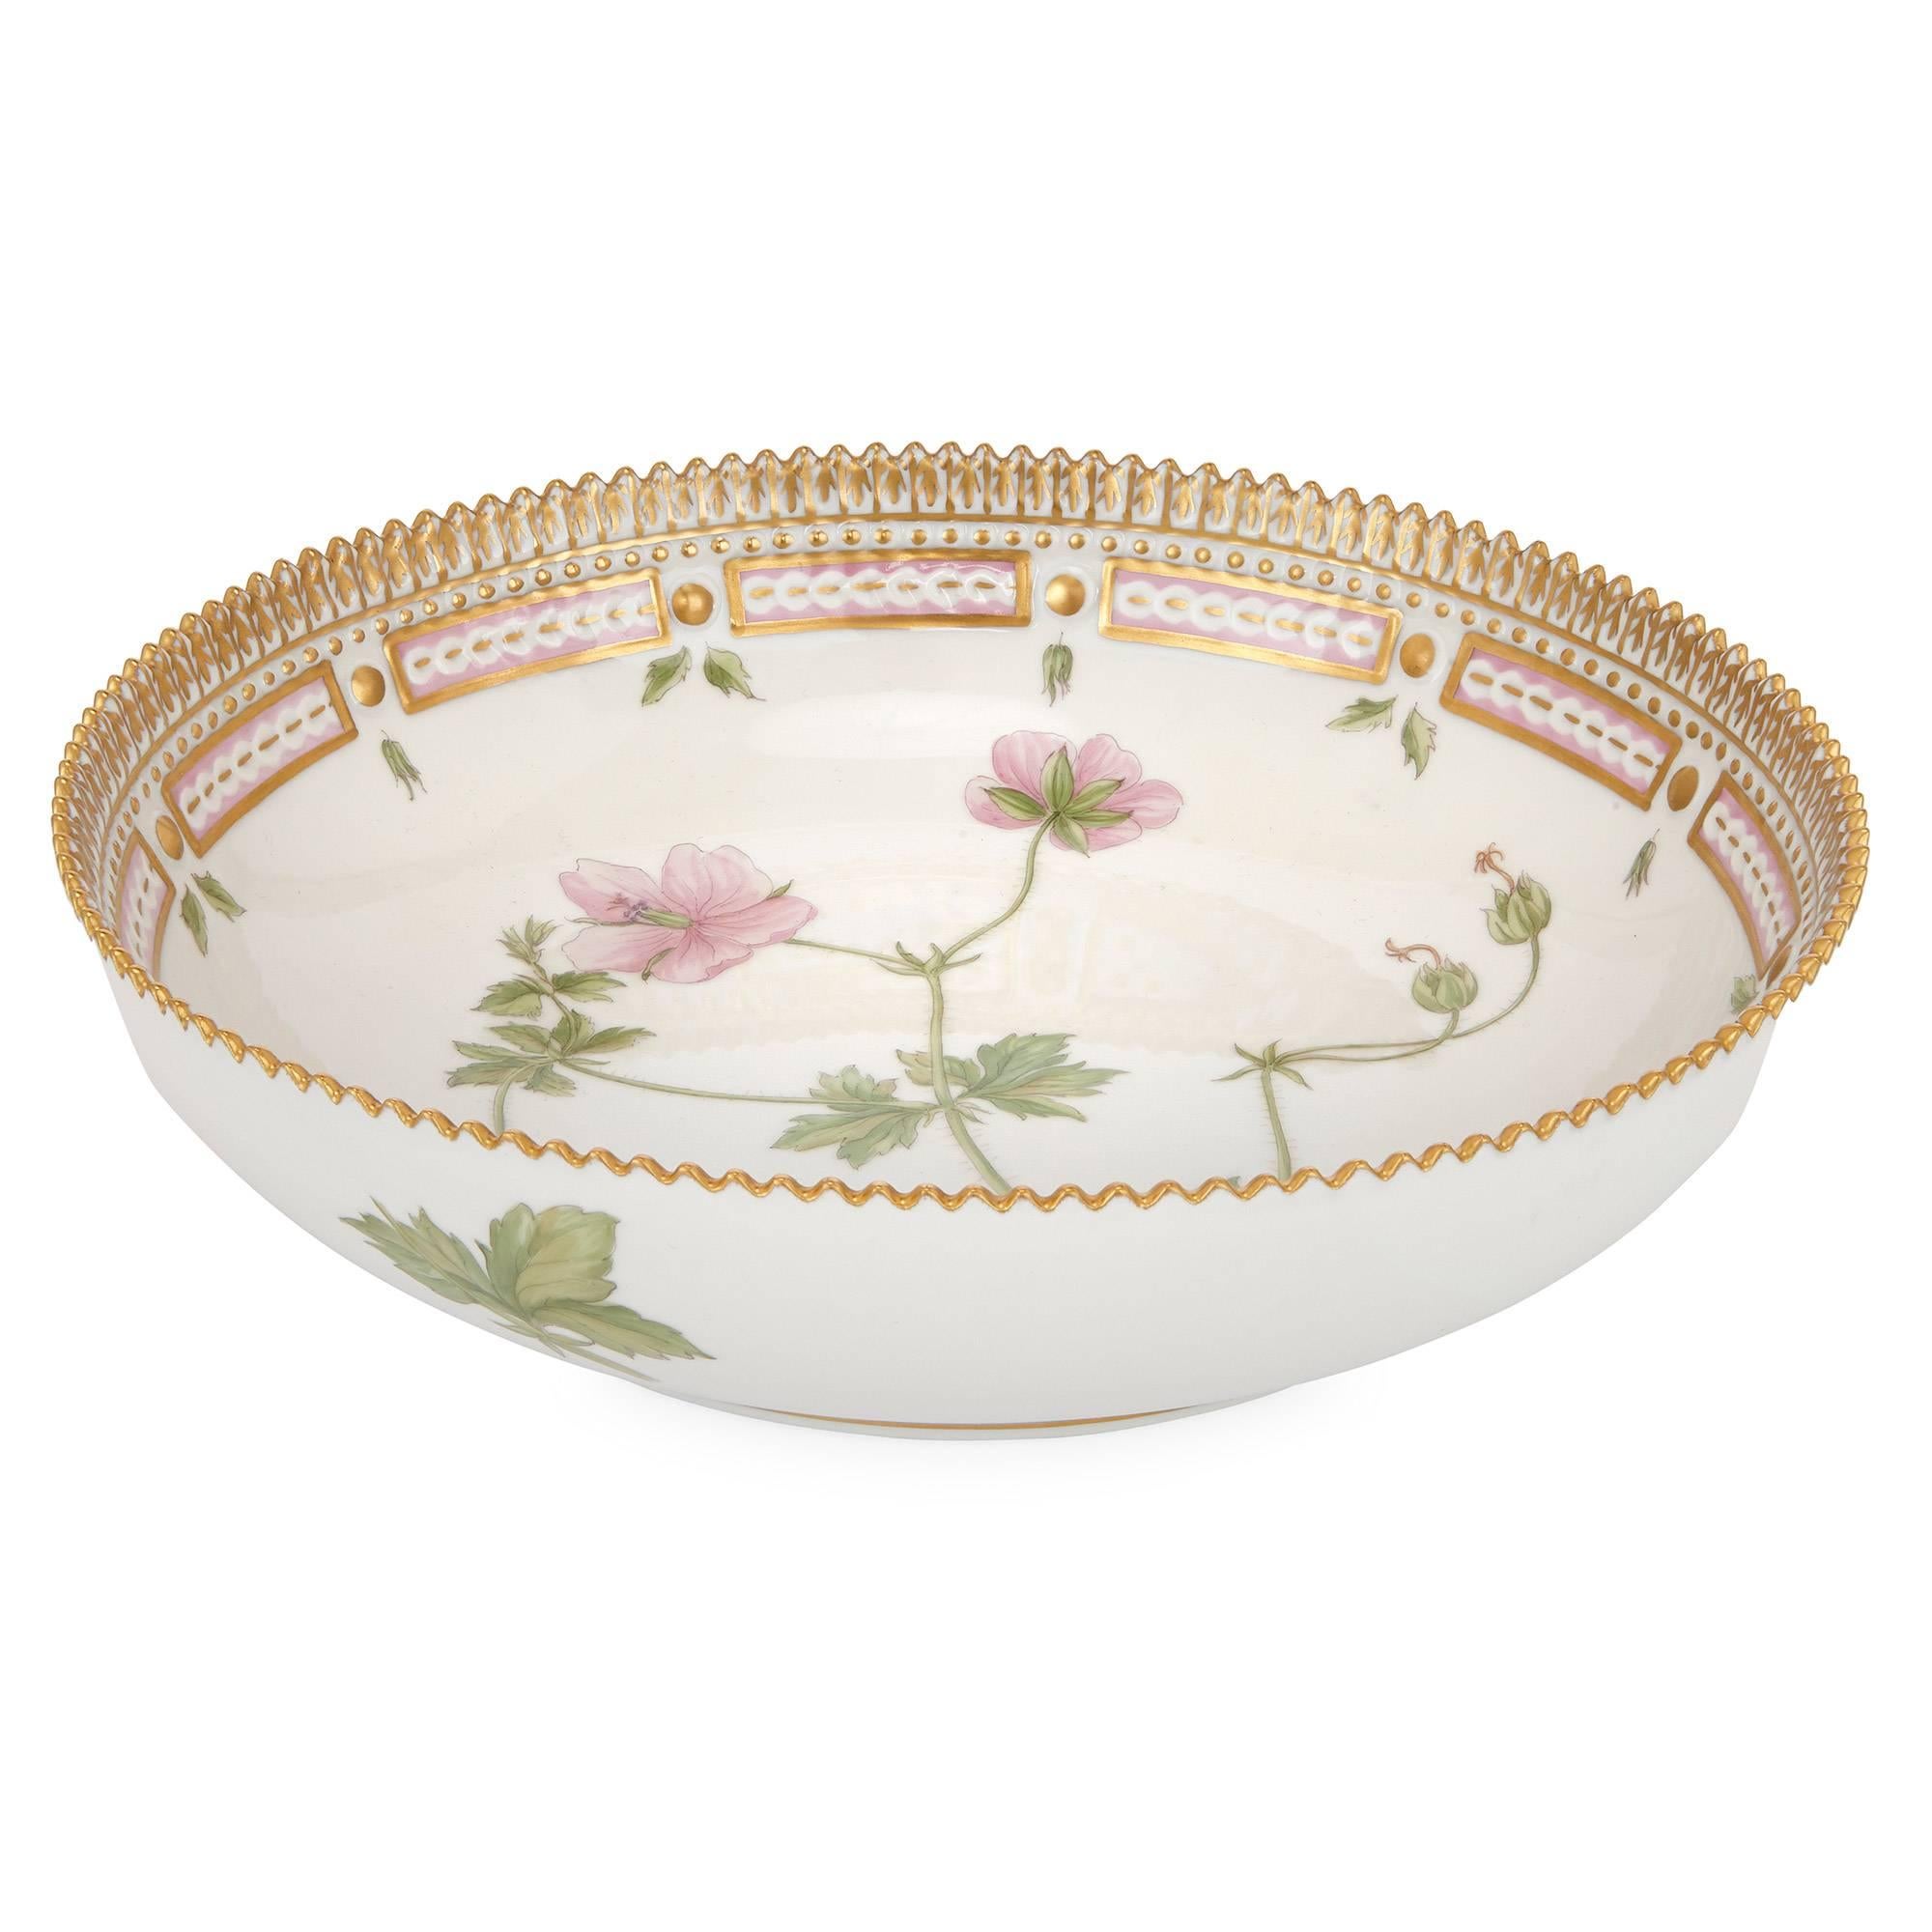 Danish Antique 'Flora Danica' Porcelain Dinner Service by Royal Copenhagen